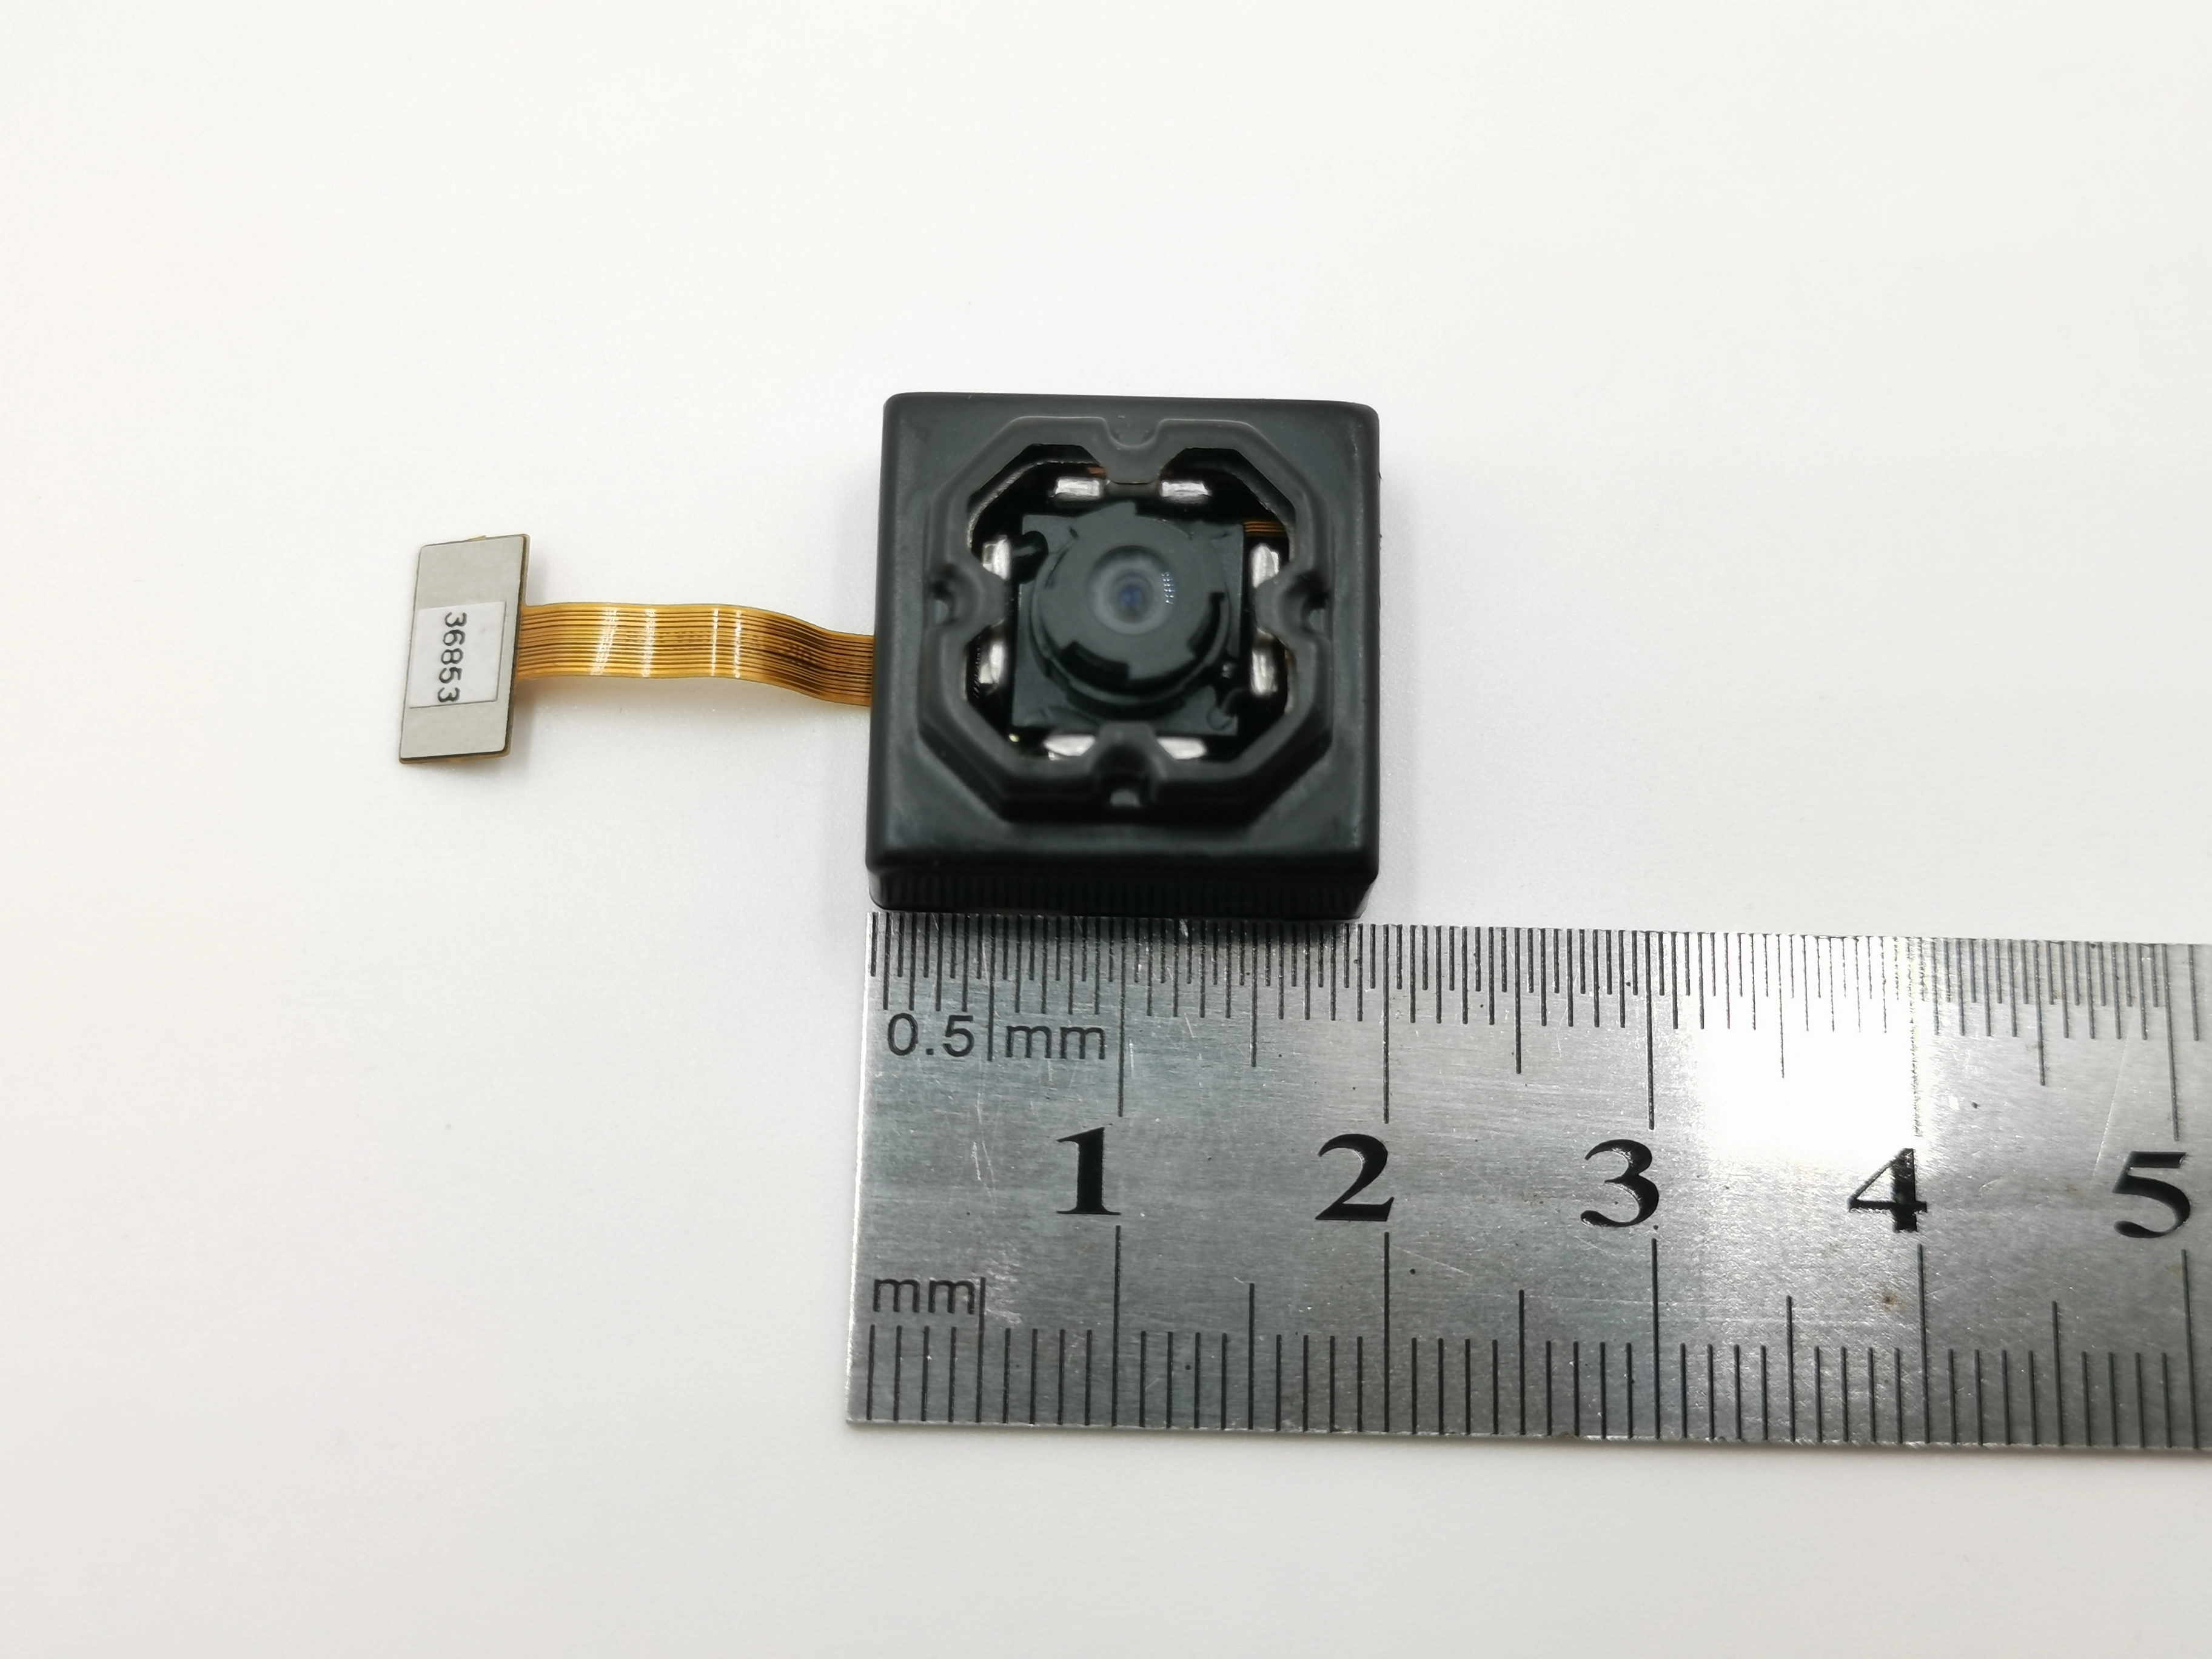 13.2 mp mipi camera module
